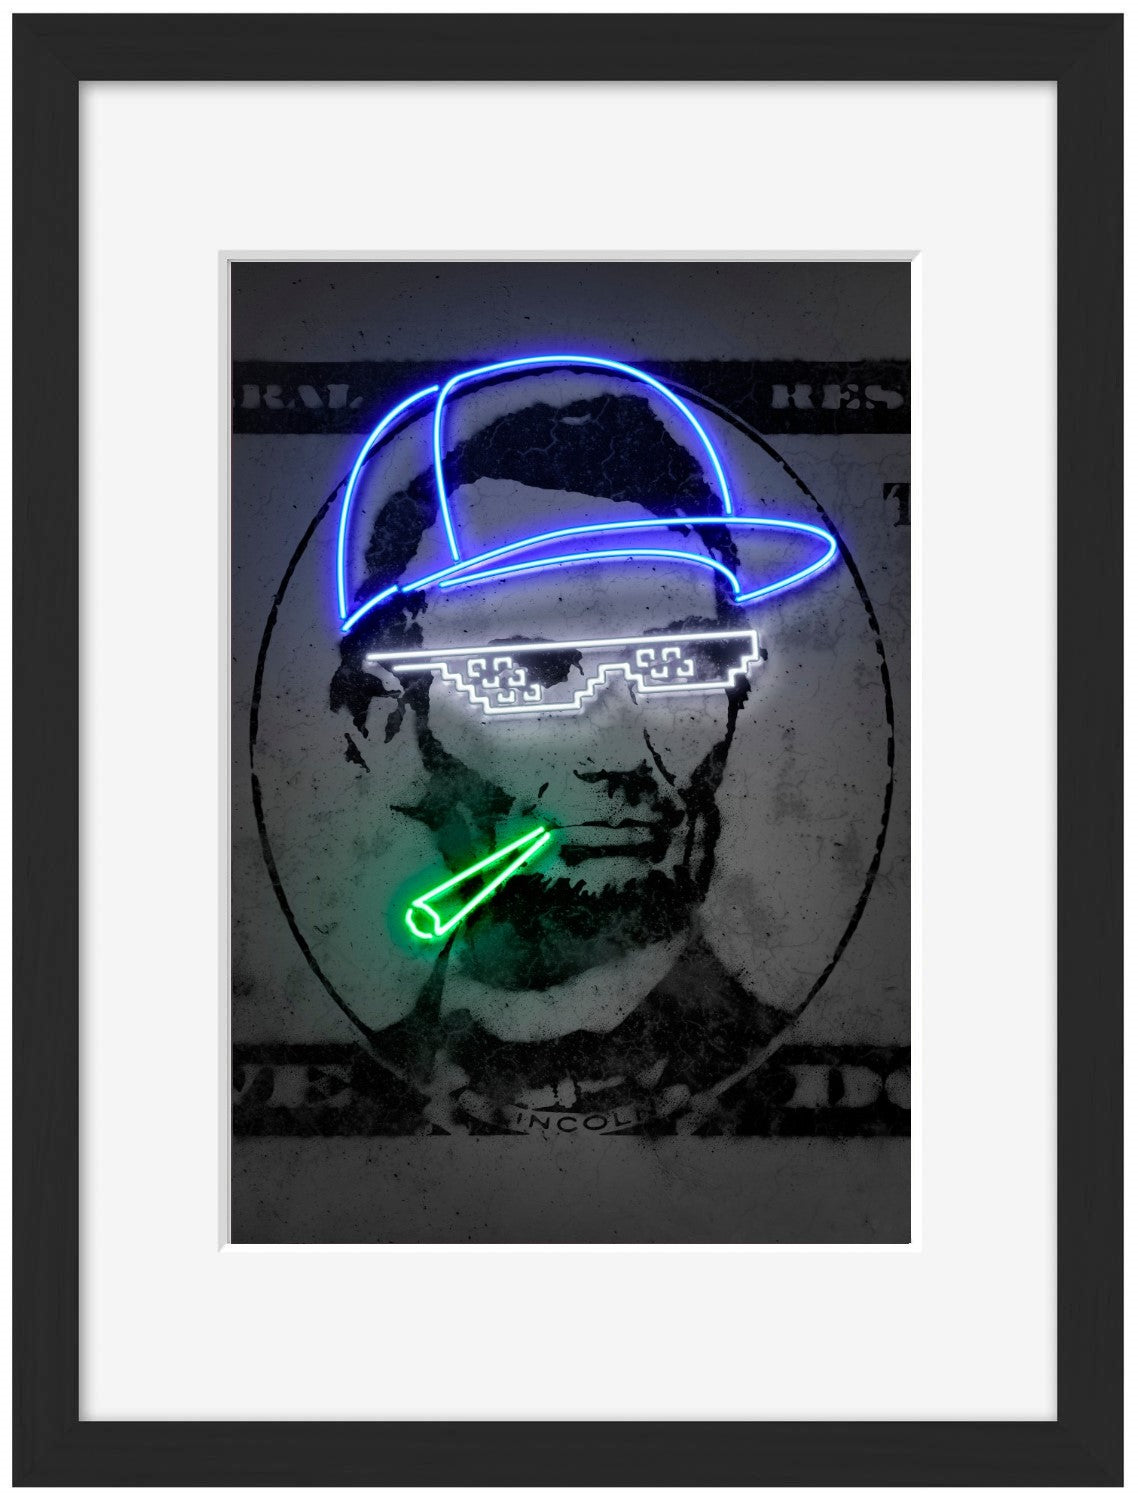 Lincoln-neon-art, print-Framed Print-30 x 40 cm-BLUE SHAKER